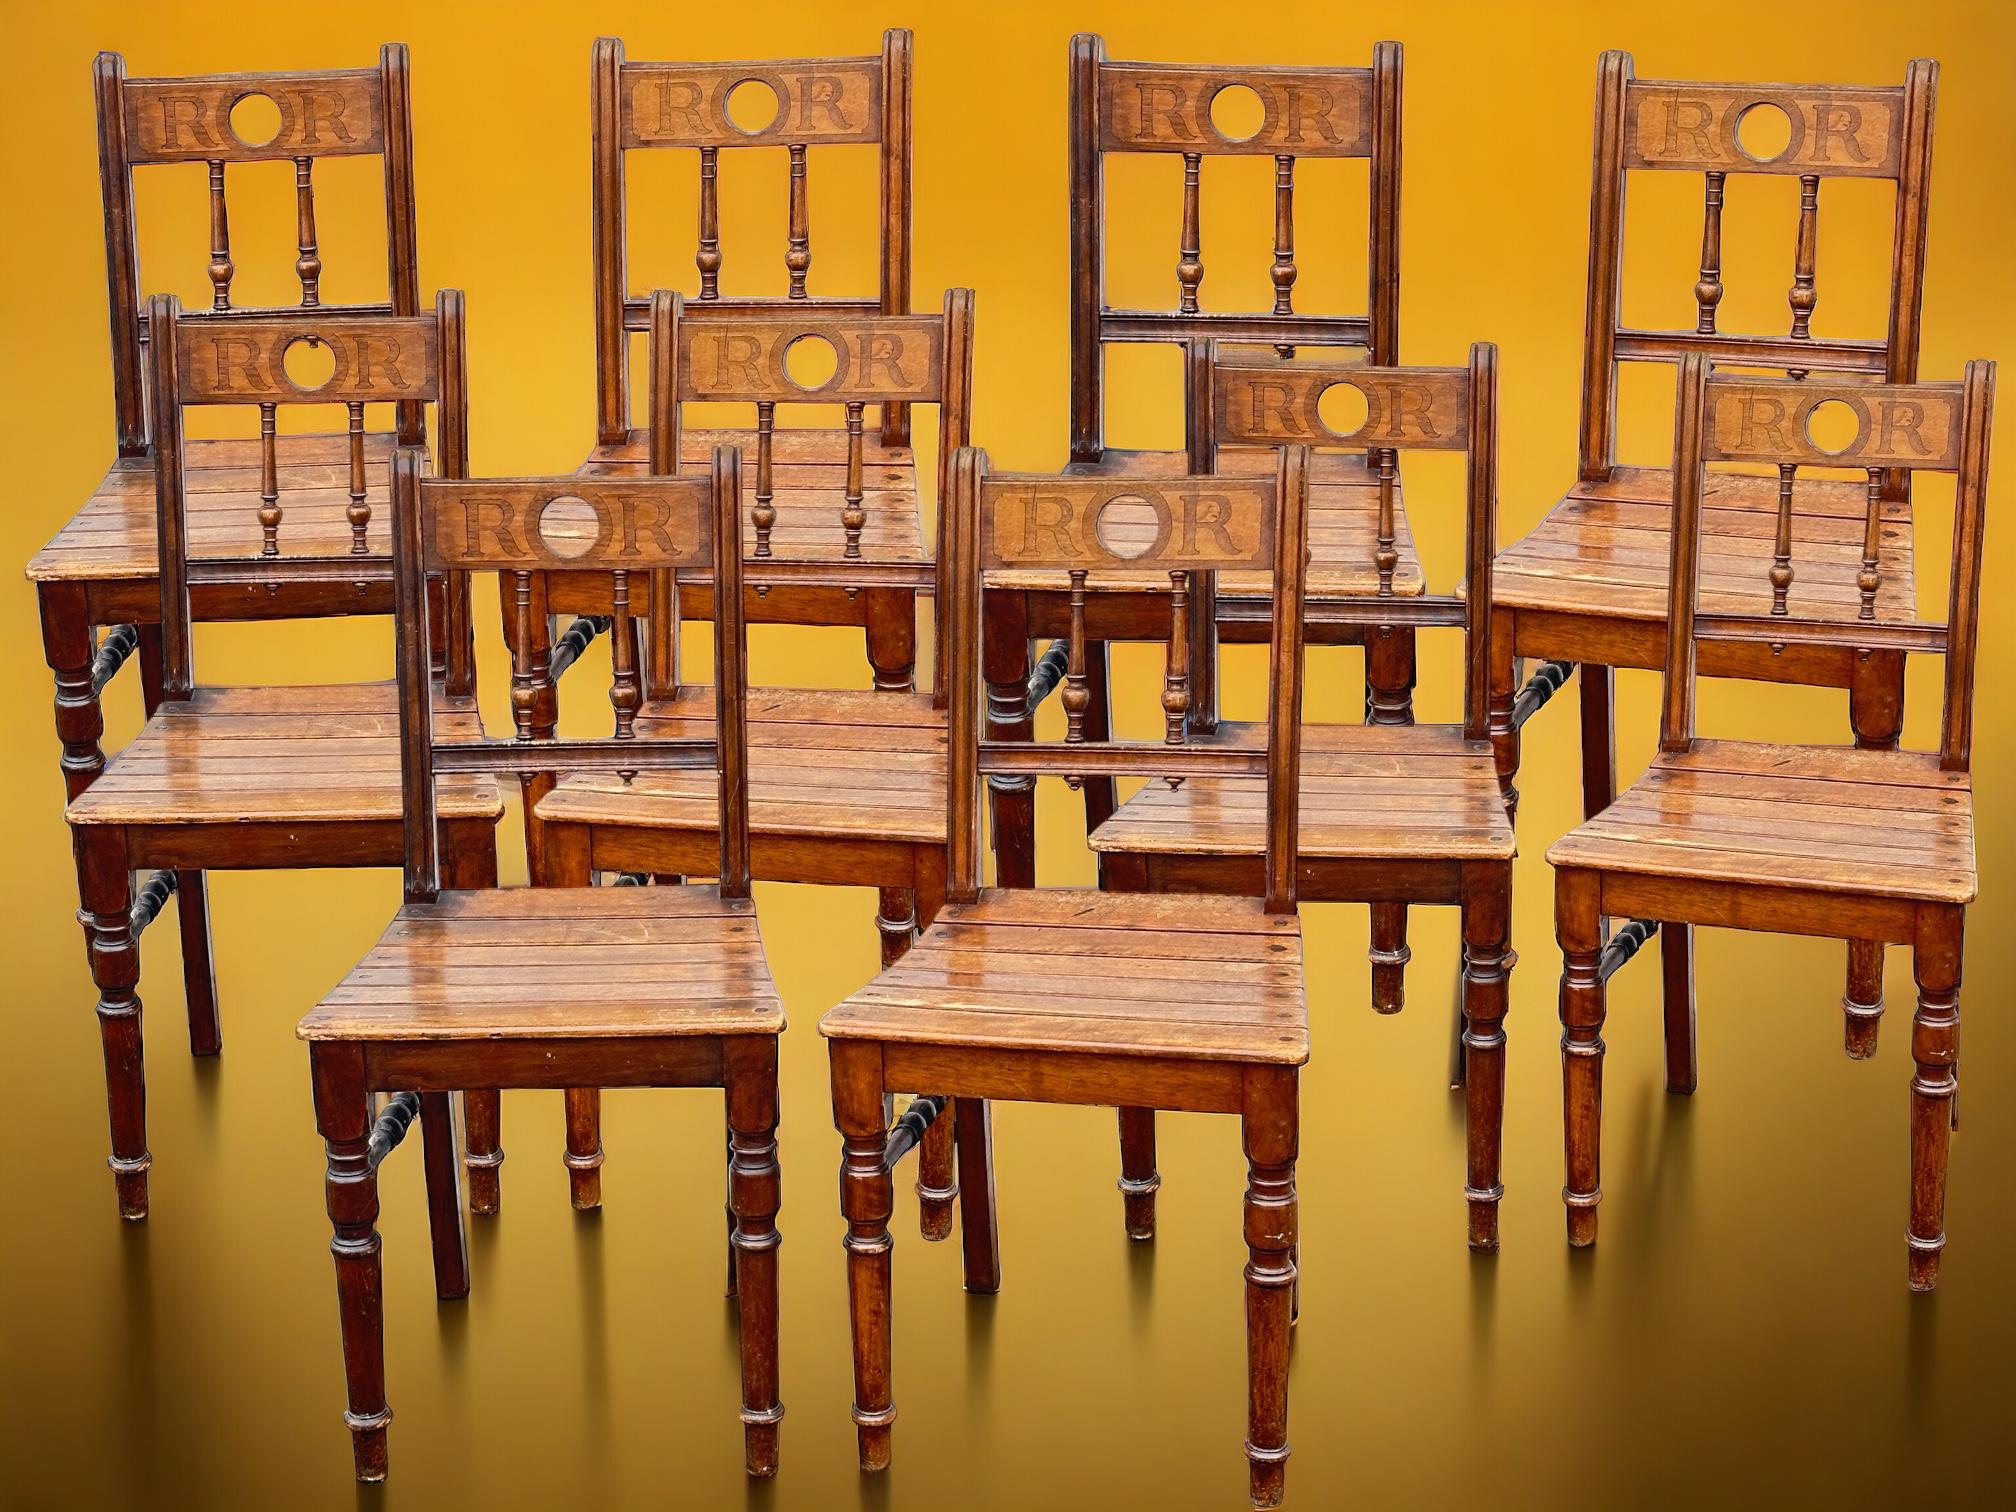 Ein Set bestehend aus 10 Stühlen aus dem Schloss Ratibor in der Stadt Roth, Bayern. Diese Stühle wurden viele Jahre lang im Speisesaal des Schlosses und in anderen Räumen für Veranstaltungen verwendet. Diese historisch interessanten Stücke wurden